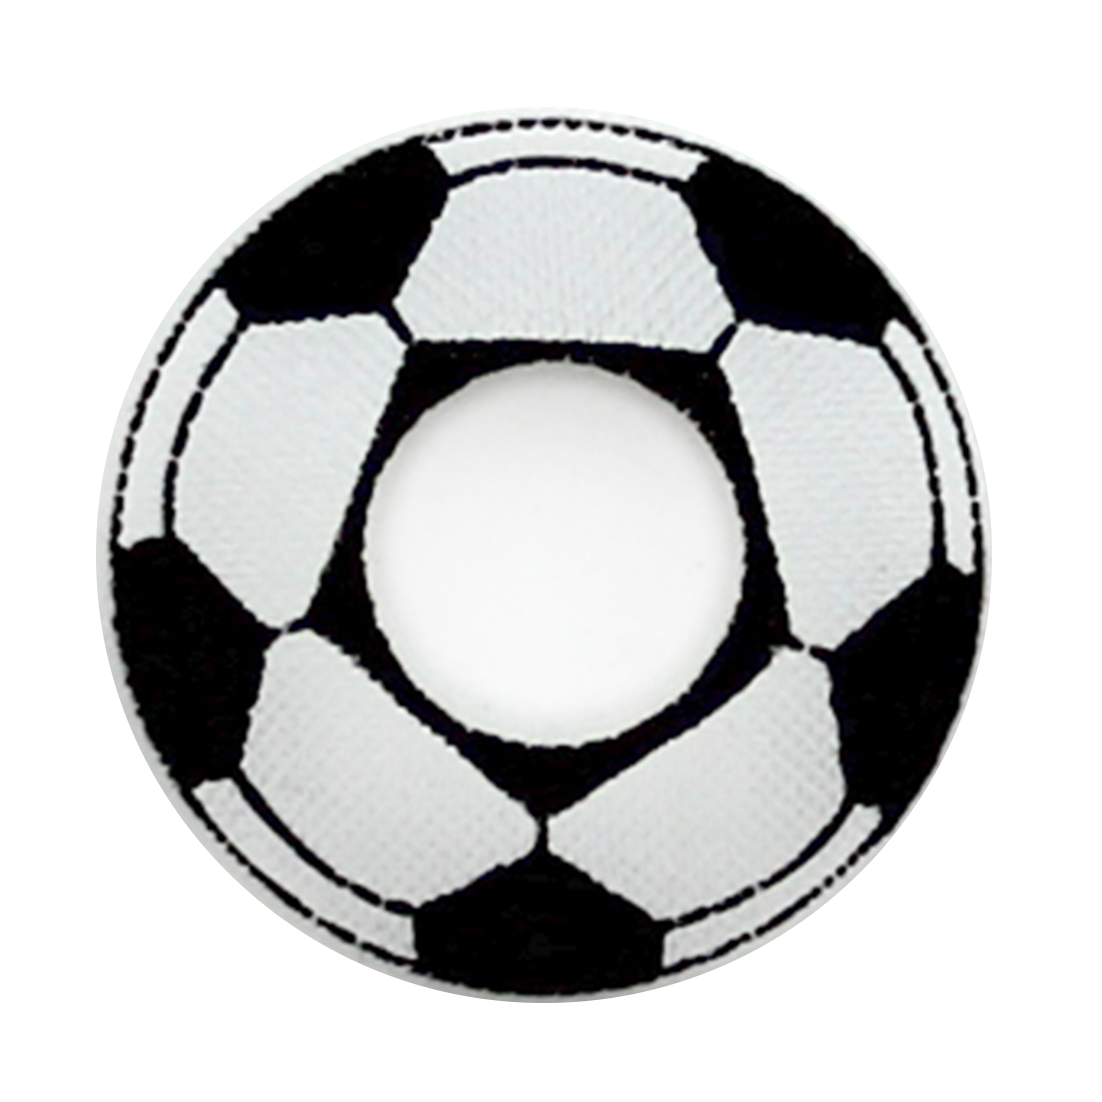 Dé foot 18 mm avec ballon de foot et pentagones noirs et blanc